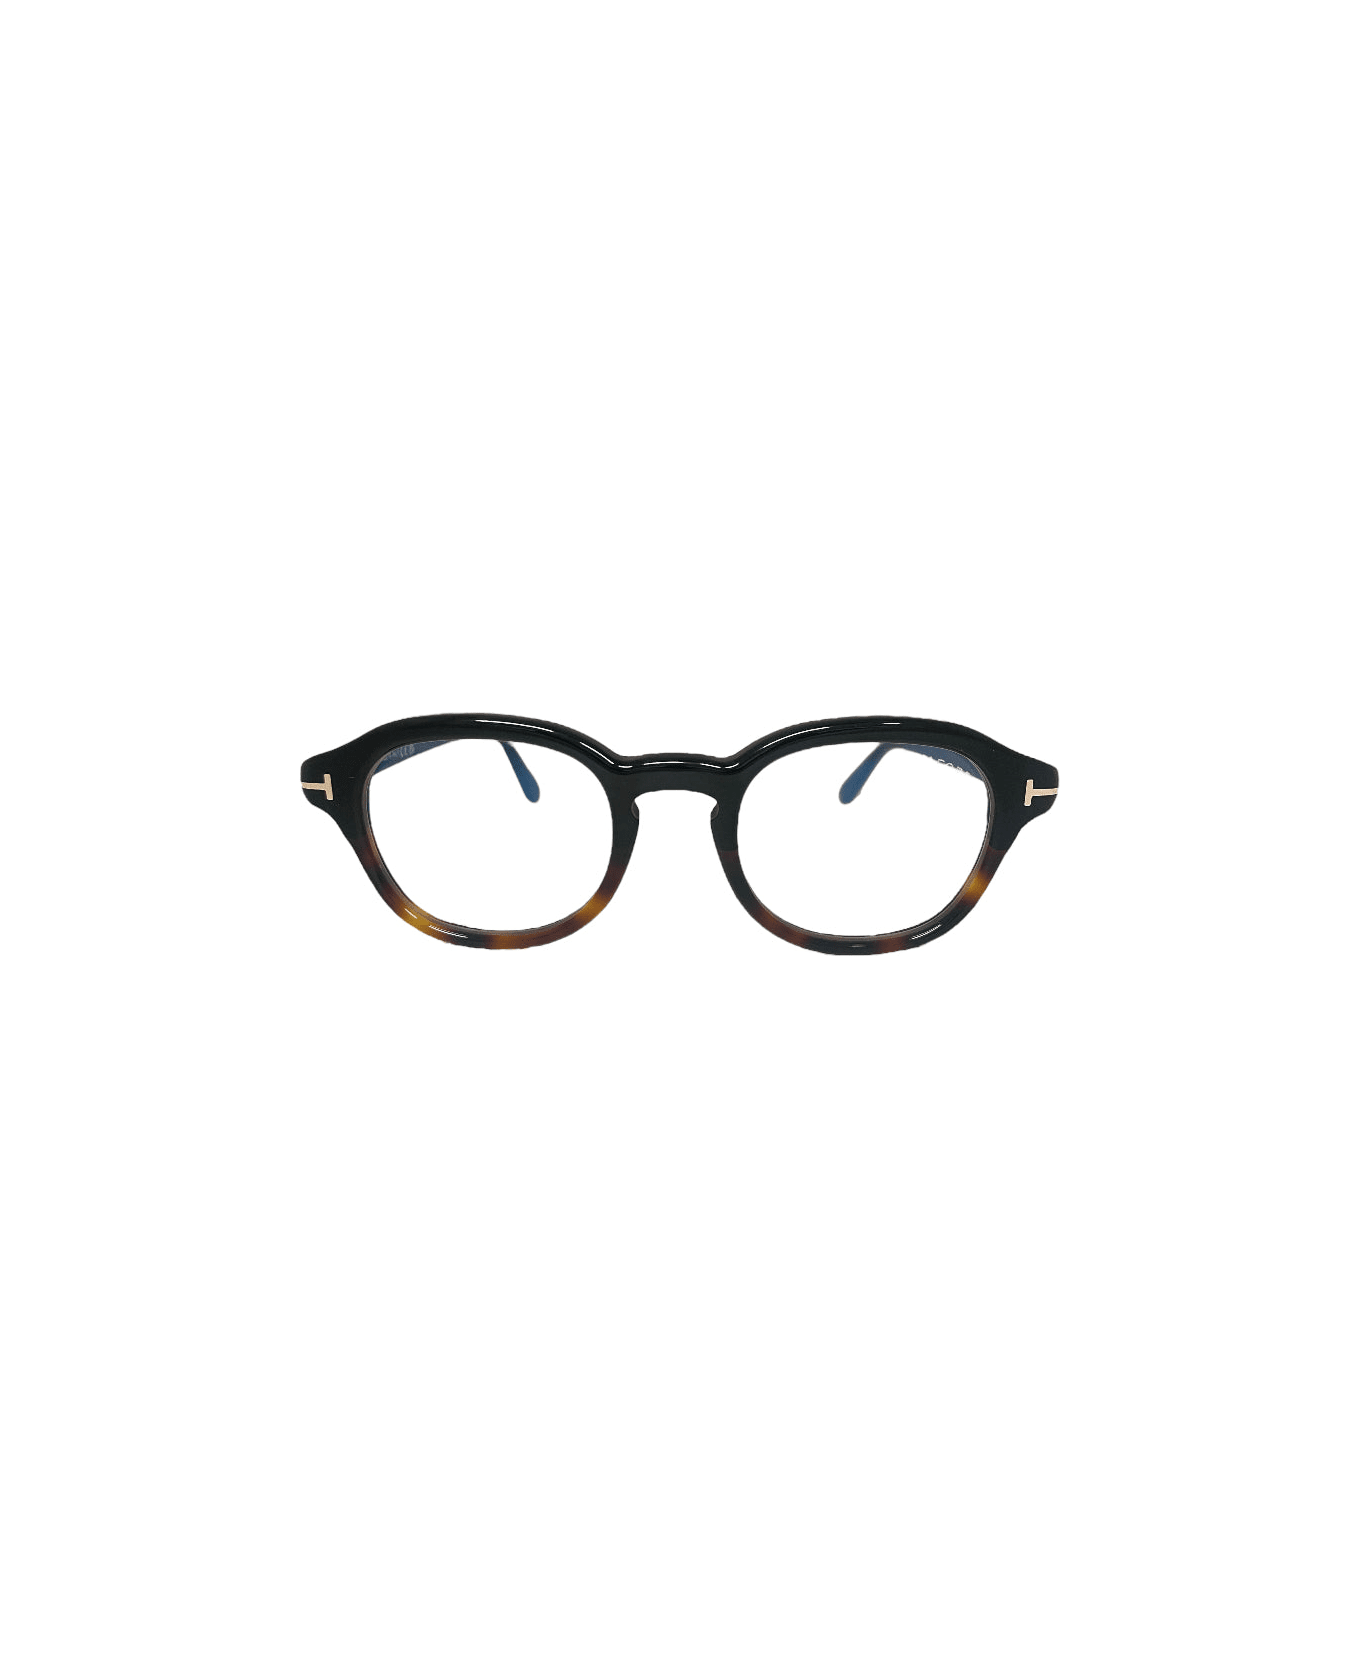 Tom Ford Eyewear Ft5871 - Havana Glasses アイウェア